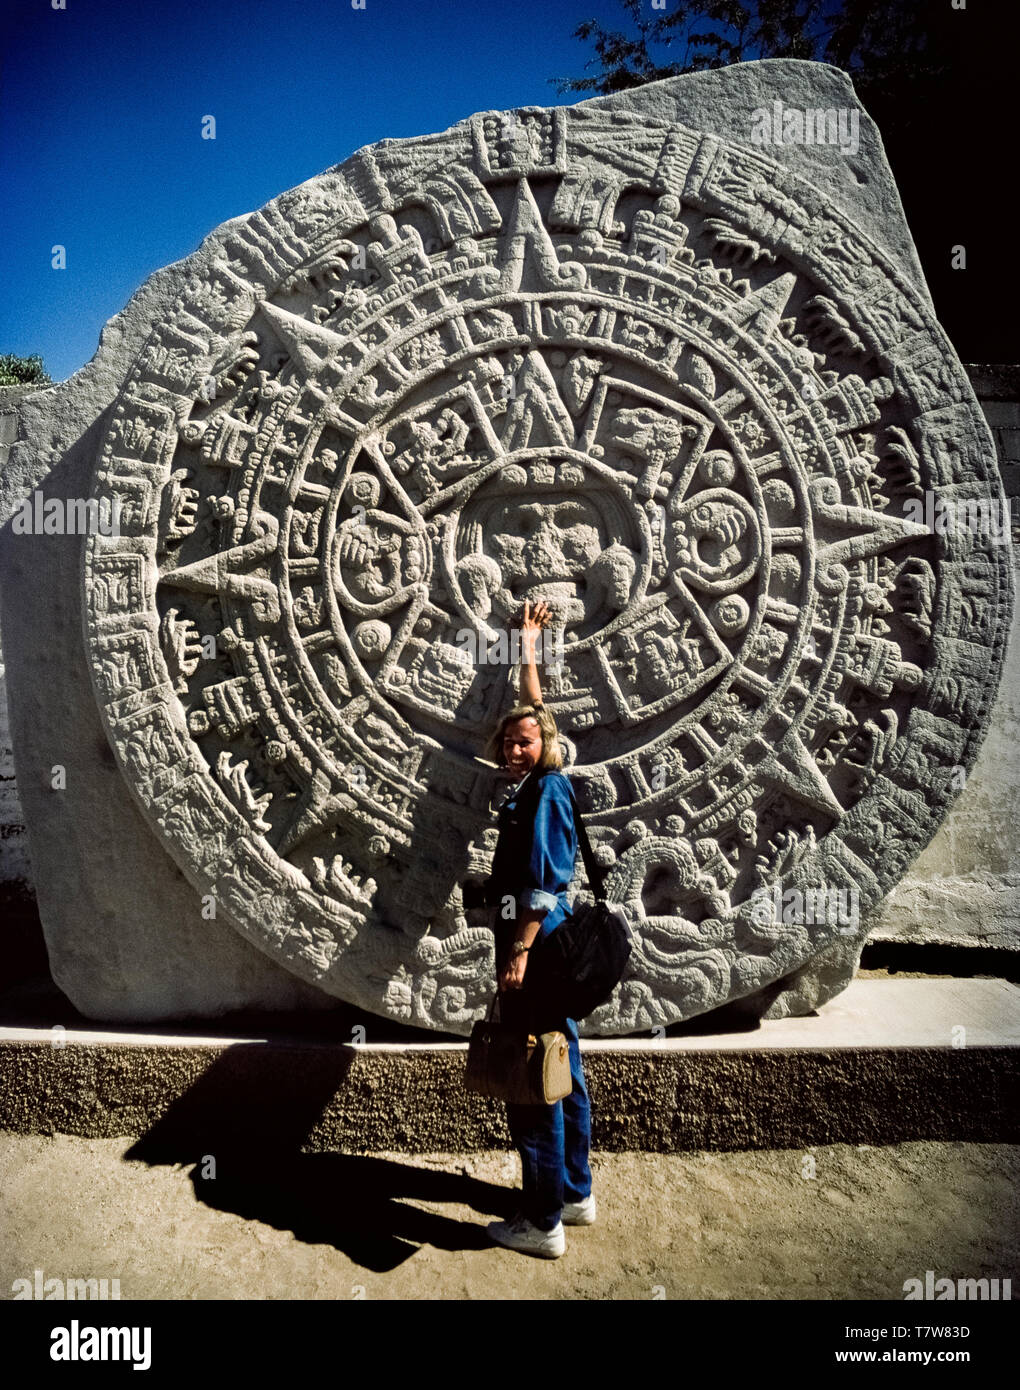 Une touriste points à la face du dieu soleil aztèque c'est le centre de cette réplique d'une grande découverte archéologique mexicain d'une sculpture massive connue comme la pierre calendaire aztèque sur l'affichage à La Paz, la capitale de la Basse-Californie du Sud au Mexique, en Amérique du Nord. Aussi appelée la pierre de soleil aztèque, le basalte dur original a été trouvé dans la ville de Mexico en 1790. Les hiéroglyphes sur le monolithe circulaire se rapportent à la mythologie de la re-création de l'Aztecan monde au 16ème siècle. Banque D'Images